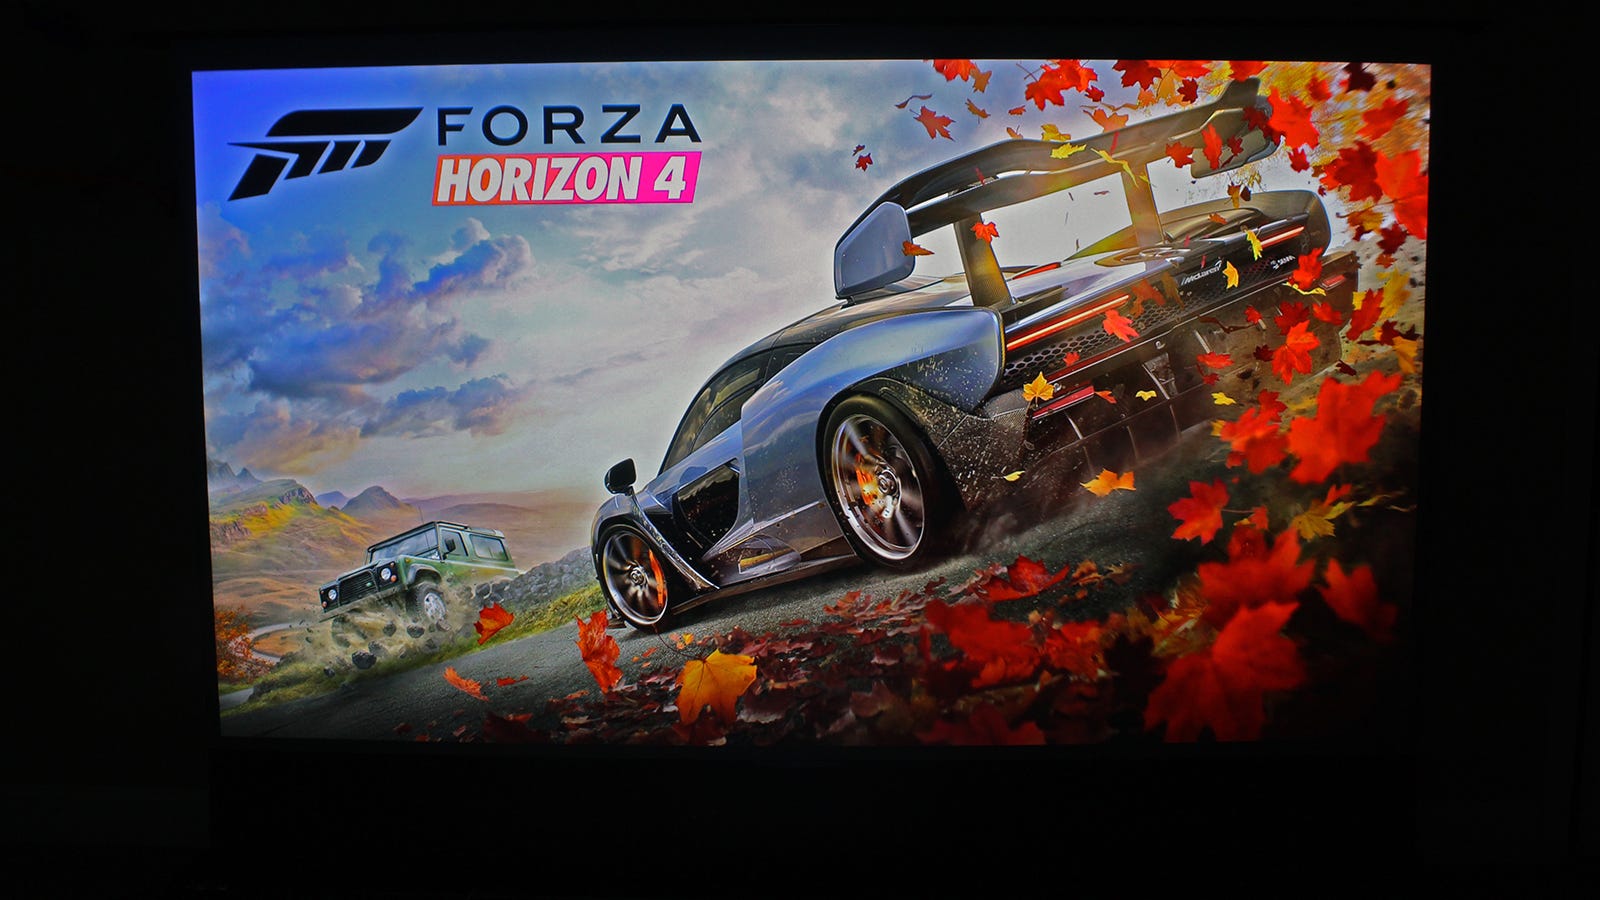 Chân trời Forza 4 màn hình giật gân trên màn hình 100 inch.